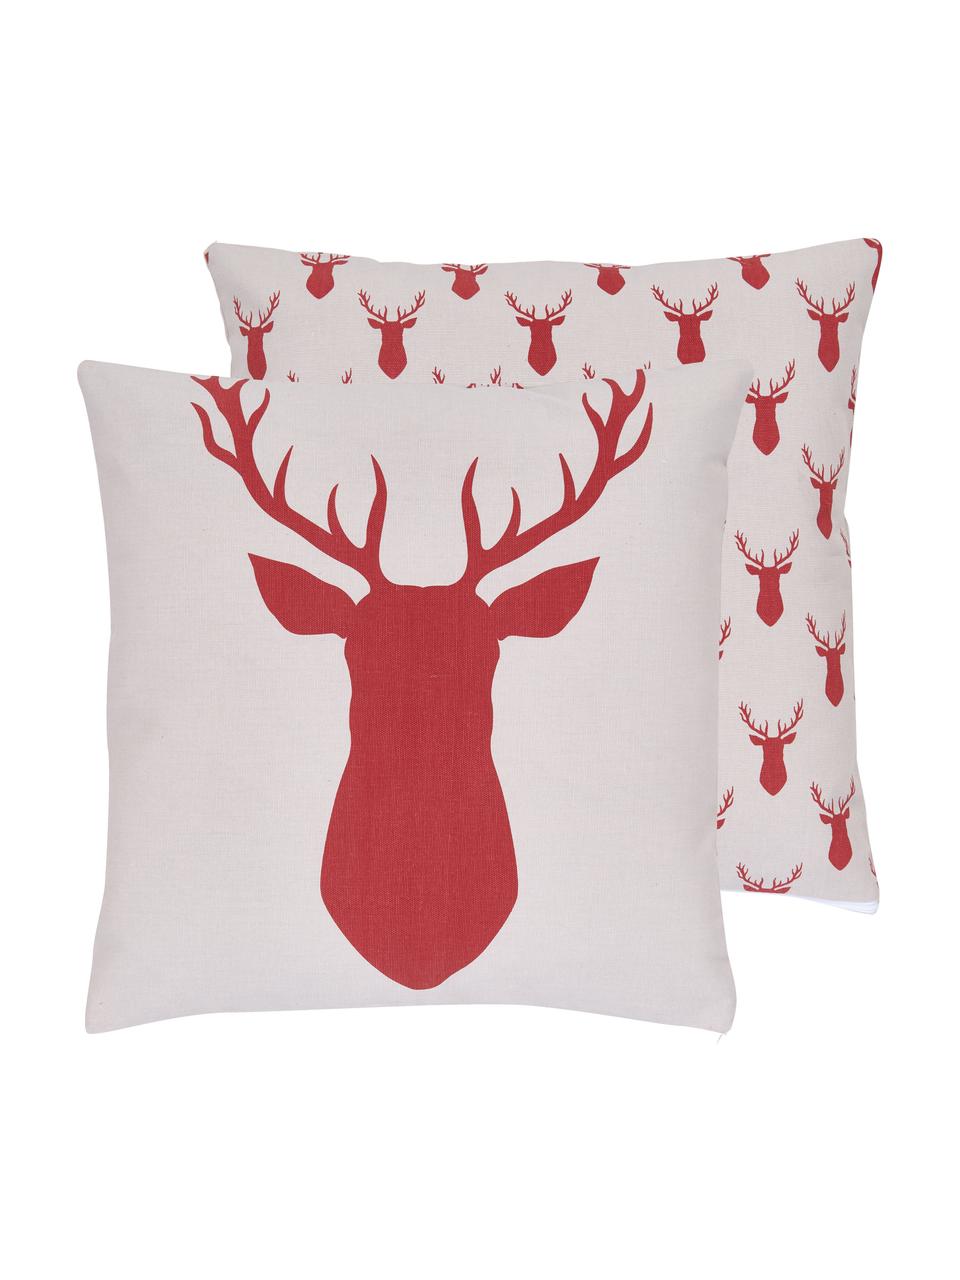 Dwustronna poszewka na poduszkę z bawełny Deer, 100% bawełna, Czerwony, S 45 x D 45 cm